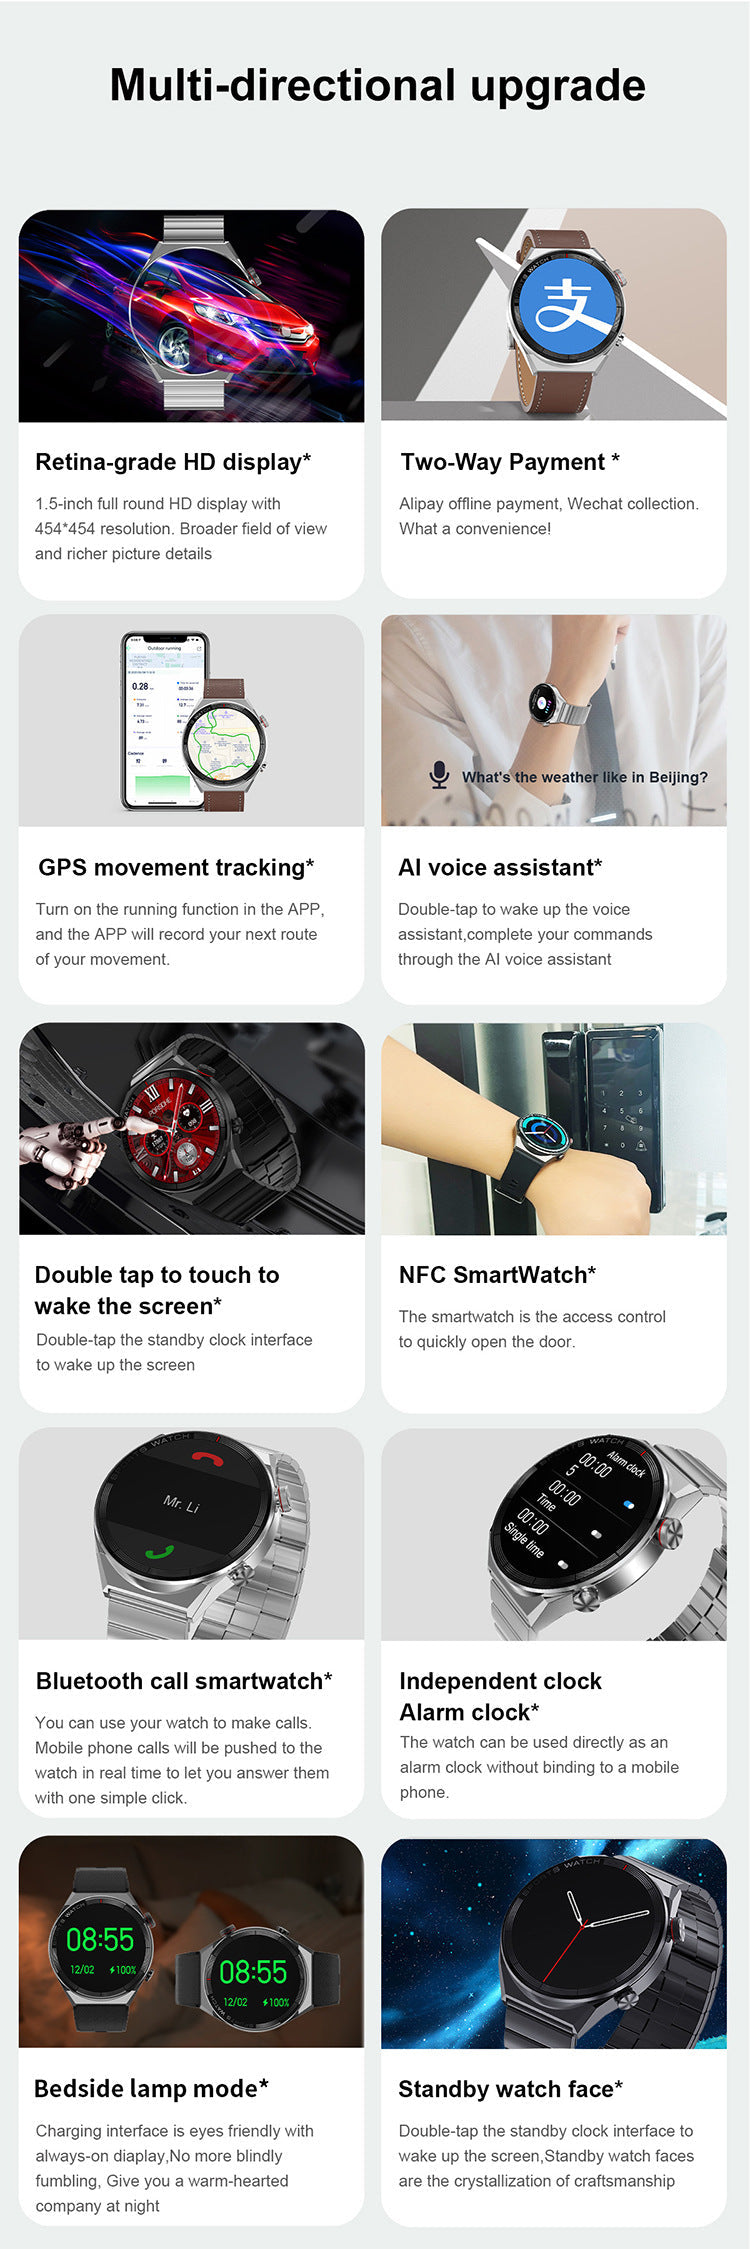 Smart Watch: Bluetooth Calling, Heart Rate Monitoring, & Music Playback LA ROSE BEAUTY